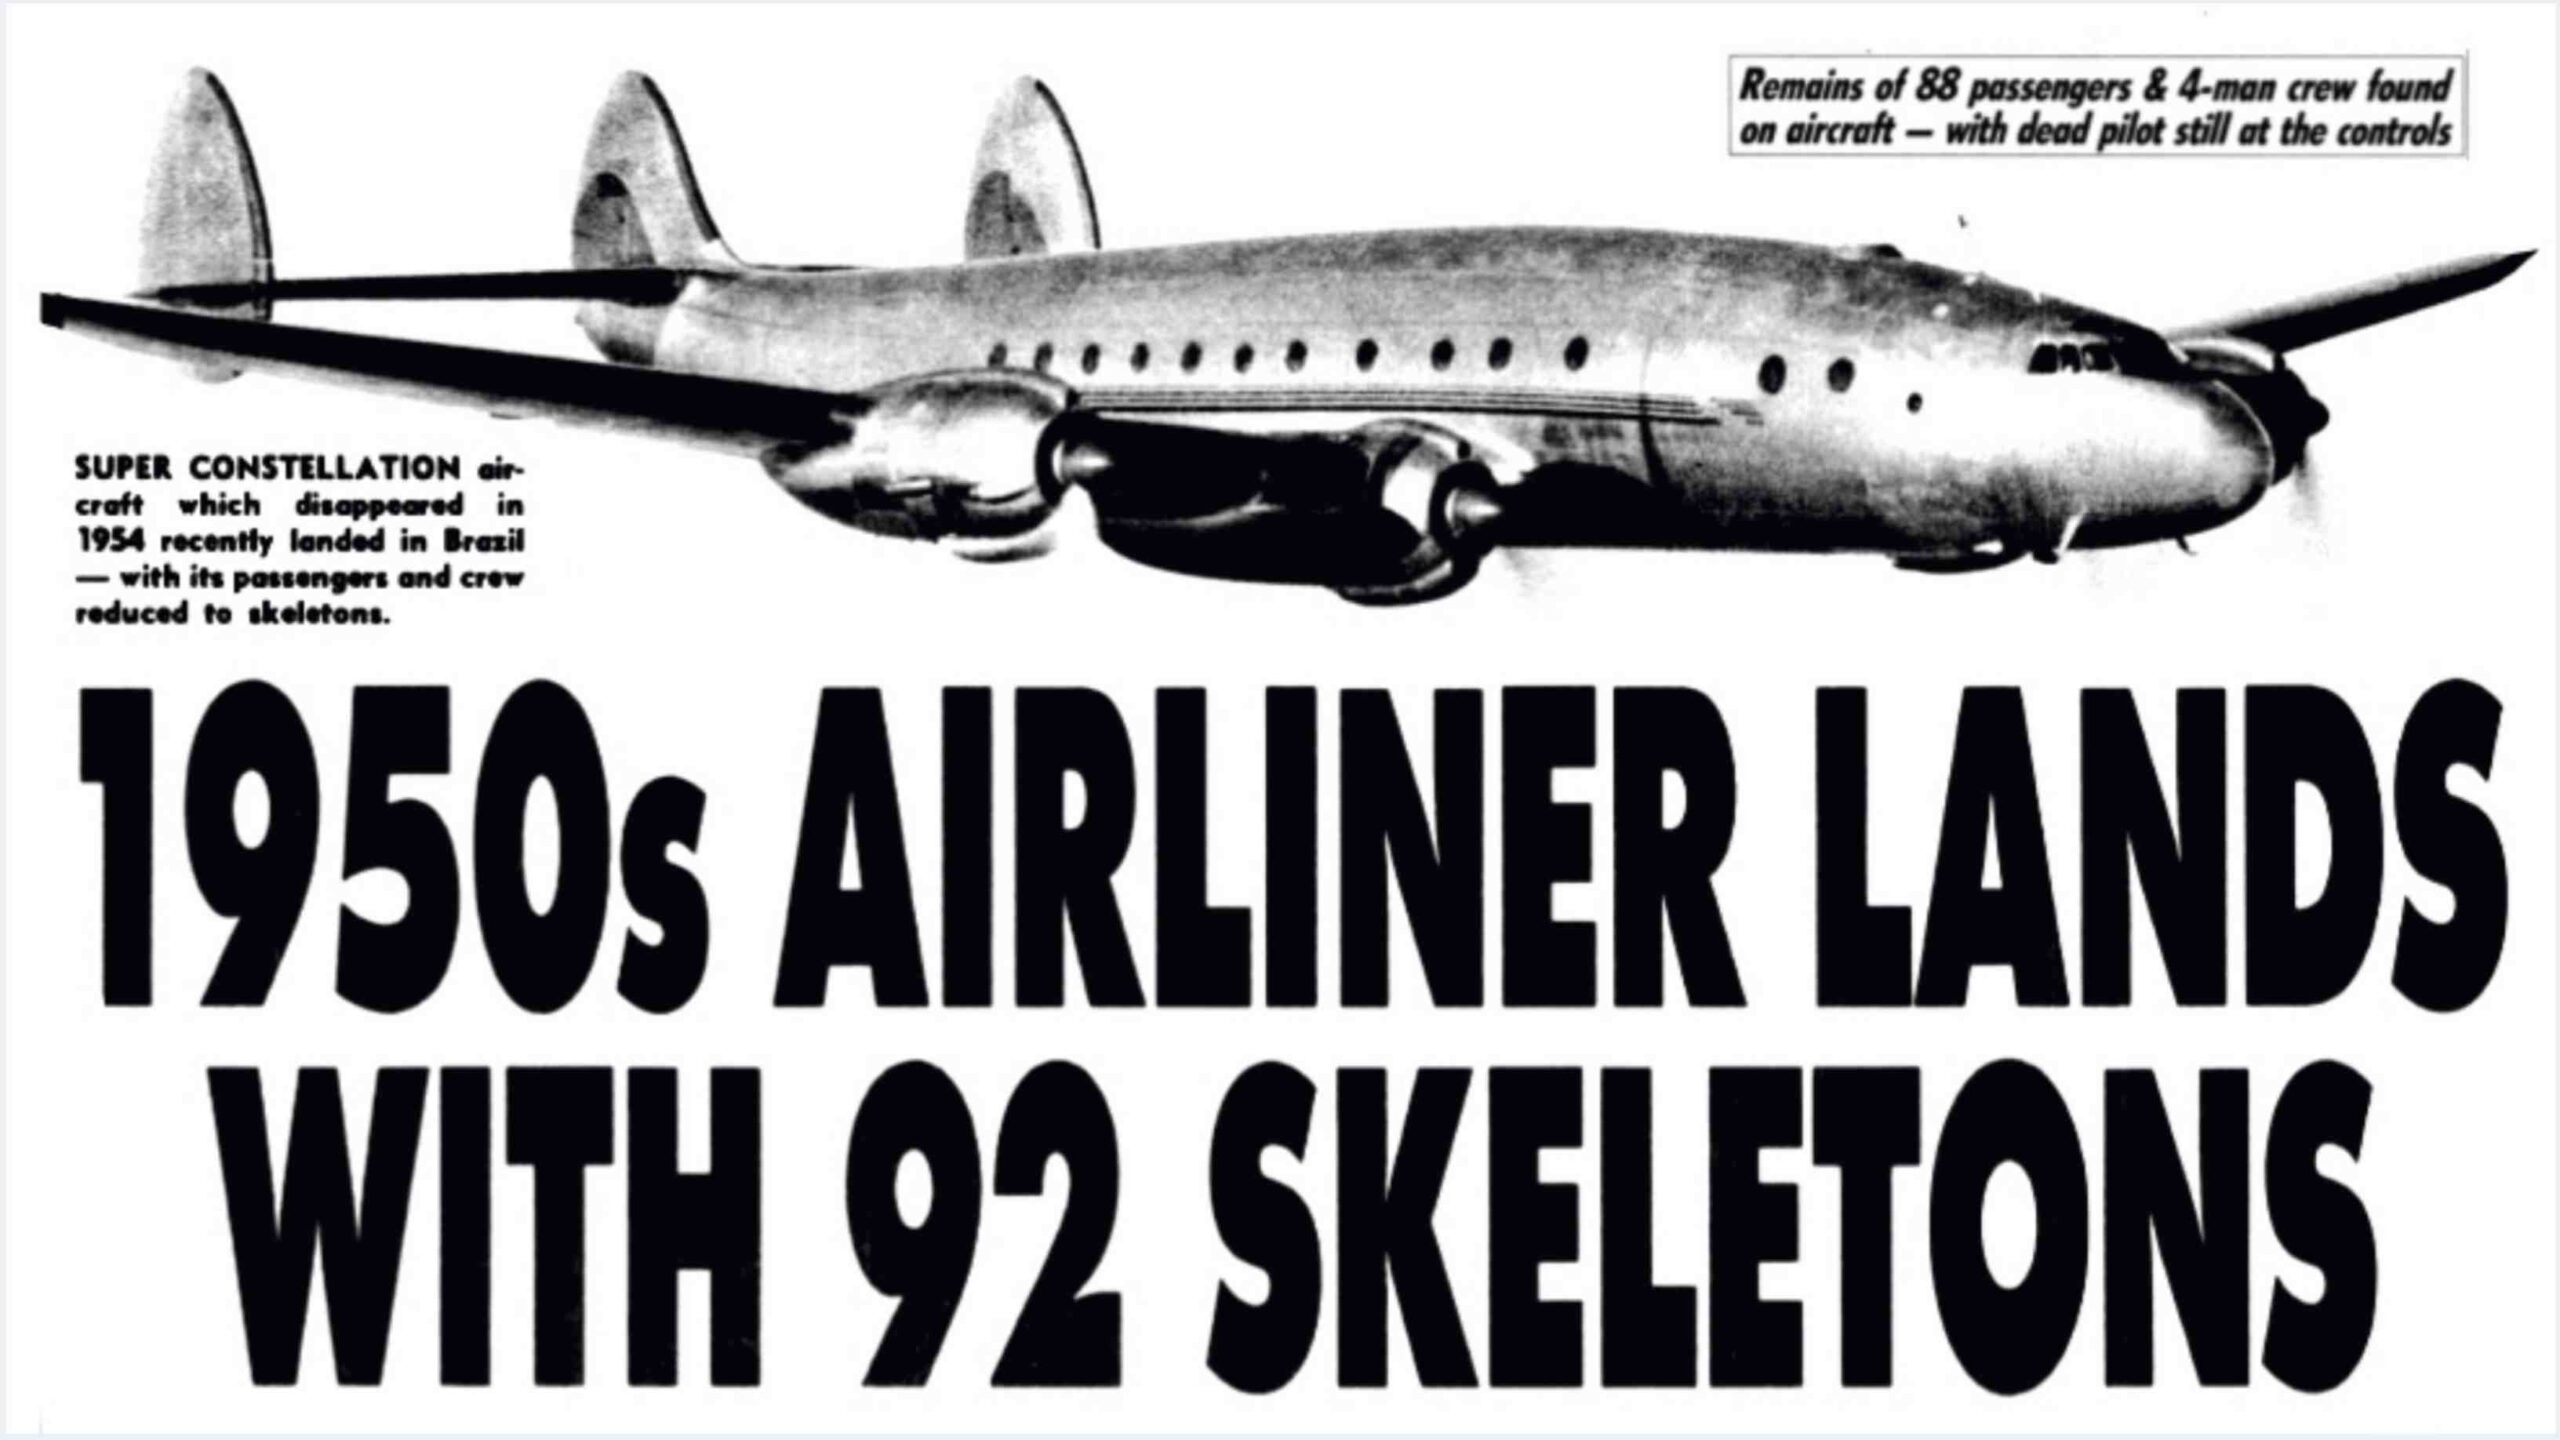 پرواز 513 سانتیاگو: هواپیمای 35 ساله گم شده با 92 اسکلت به زمین نشست! 1